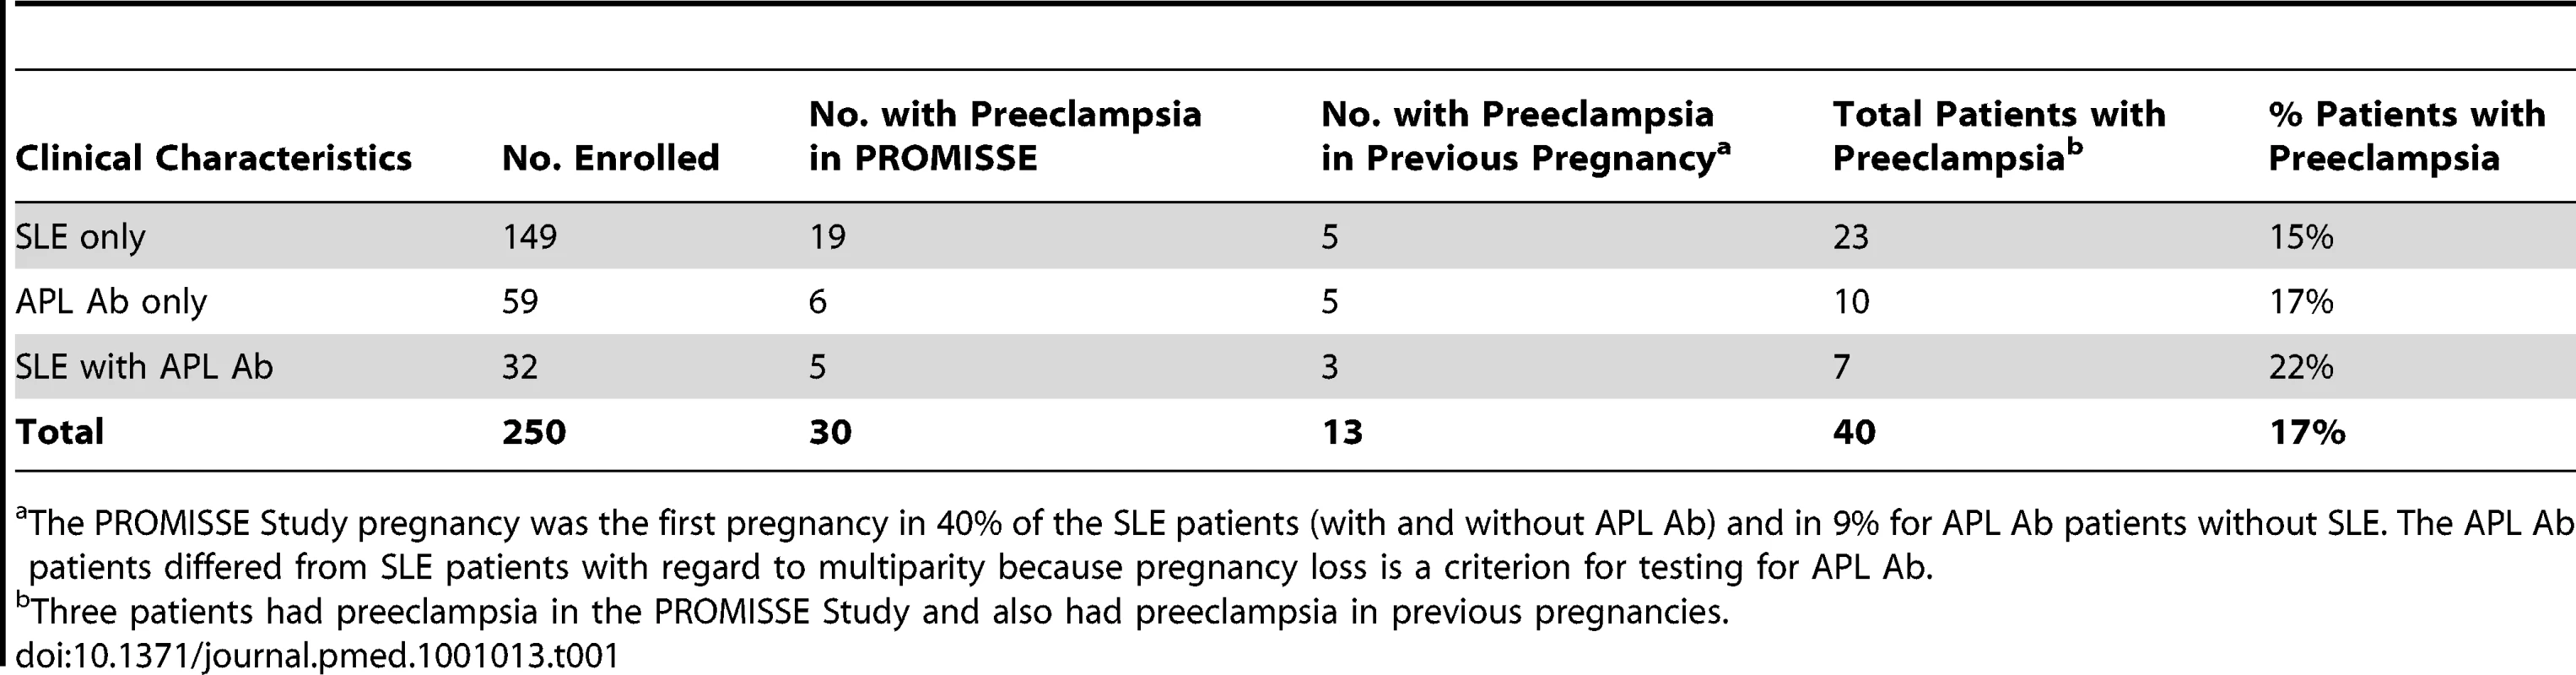 Preeclampsia in autoimmune PROMISSE patients.